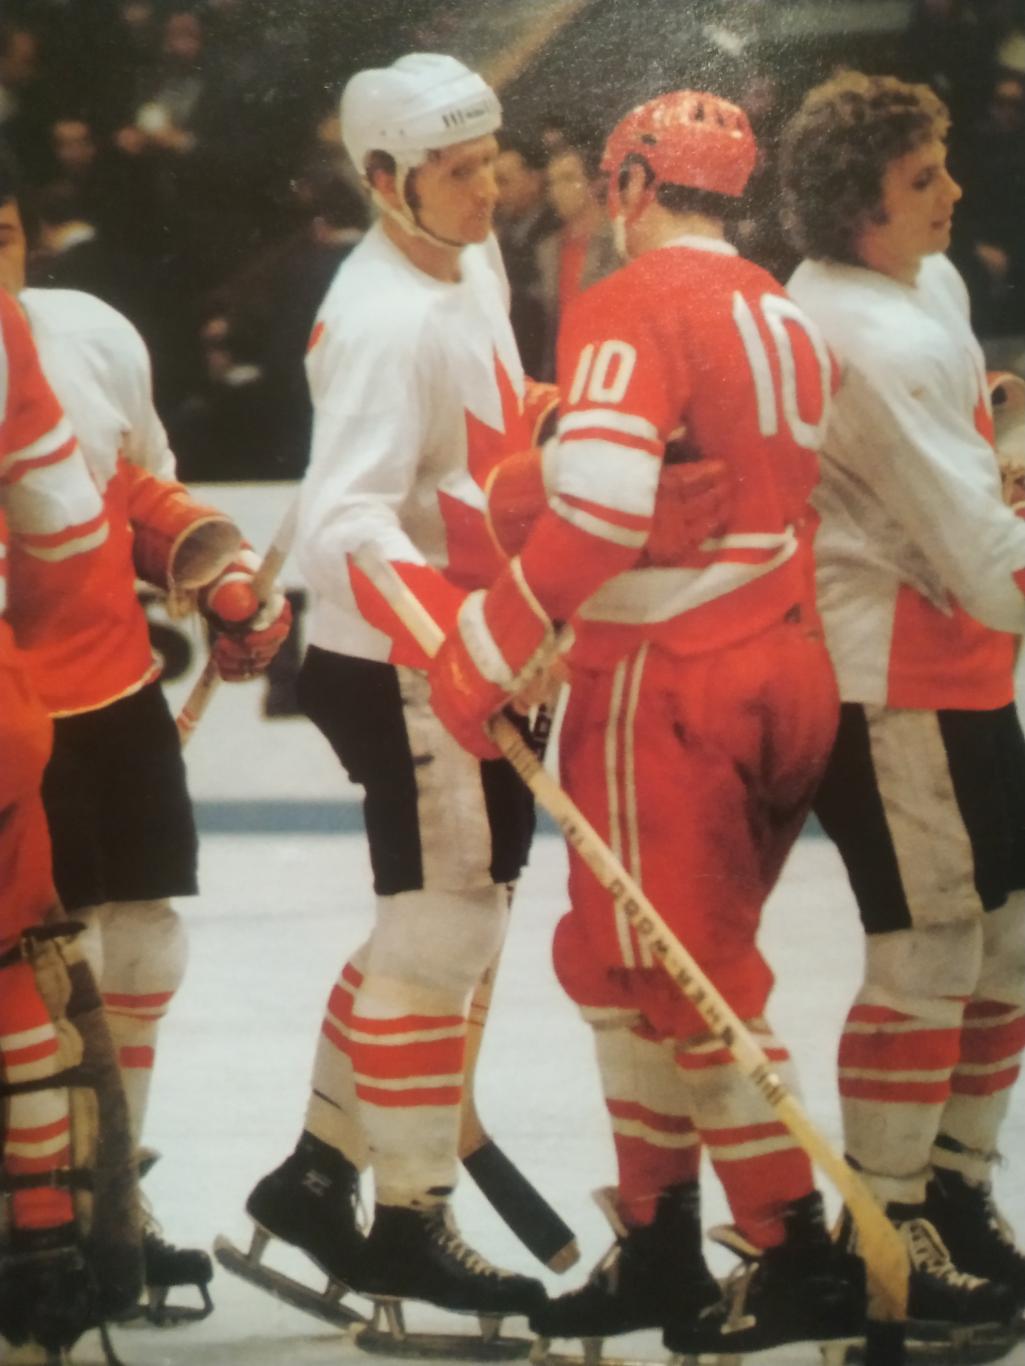 ПРОГРАММА МАТЧА НХЛ СПАРТАК - ВАНКУВЕР 28.12.1977 NHL SPARTAK VS. VANCOUVER 6